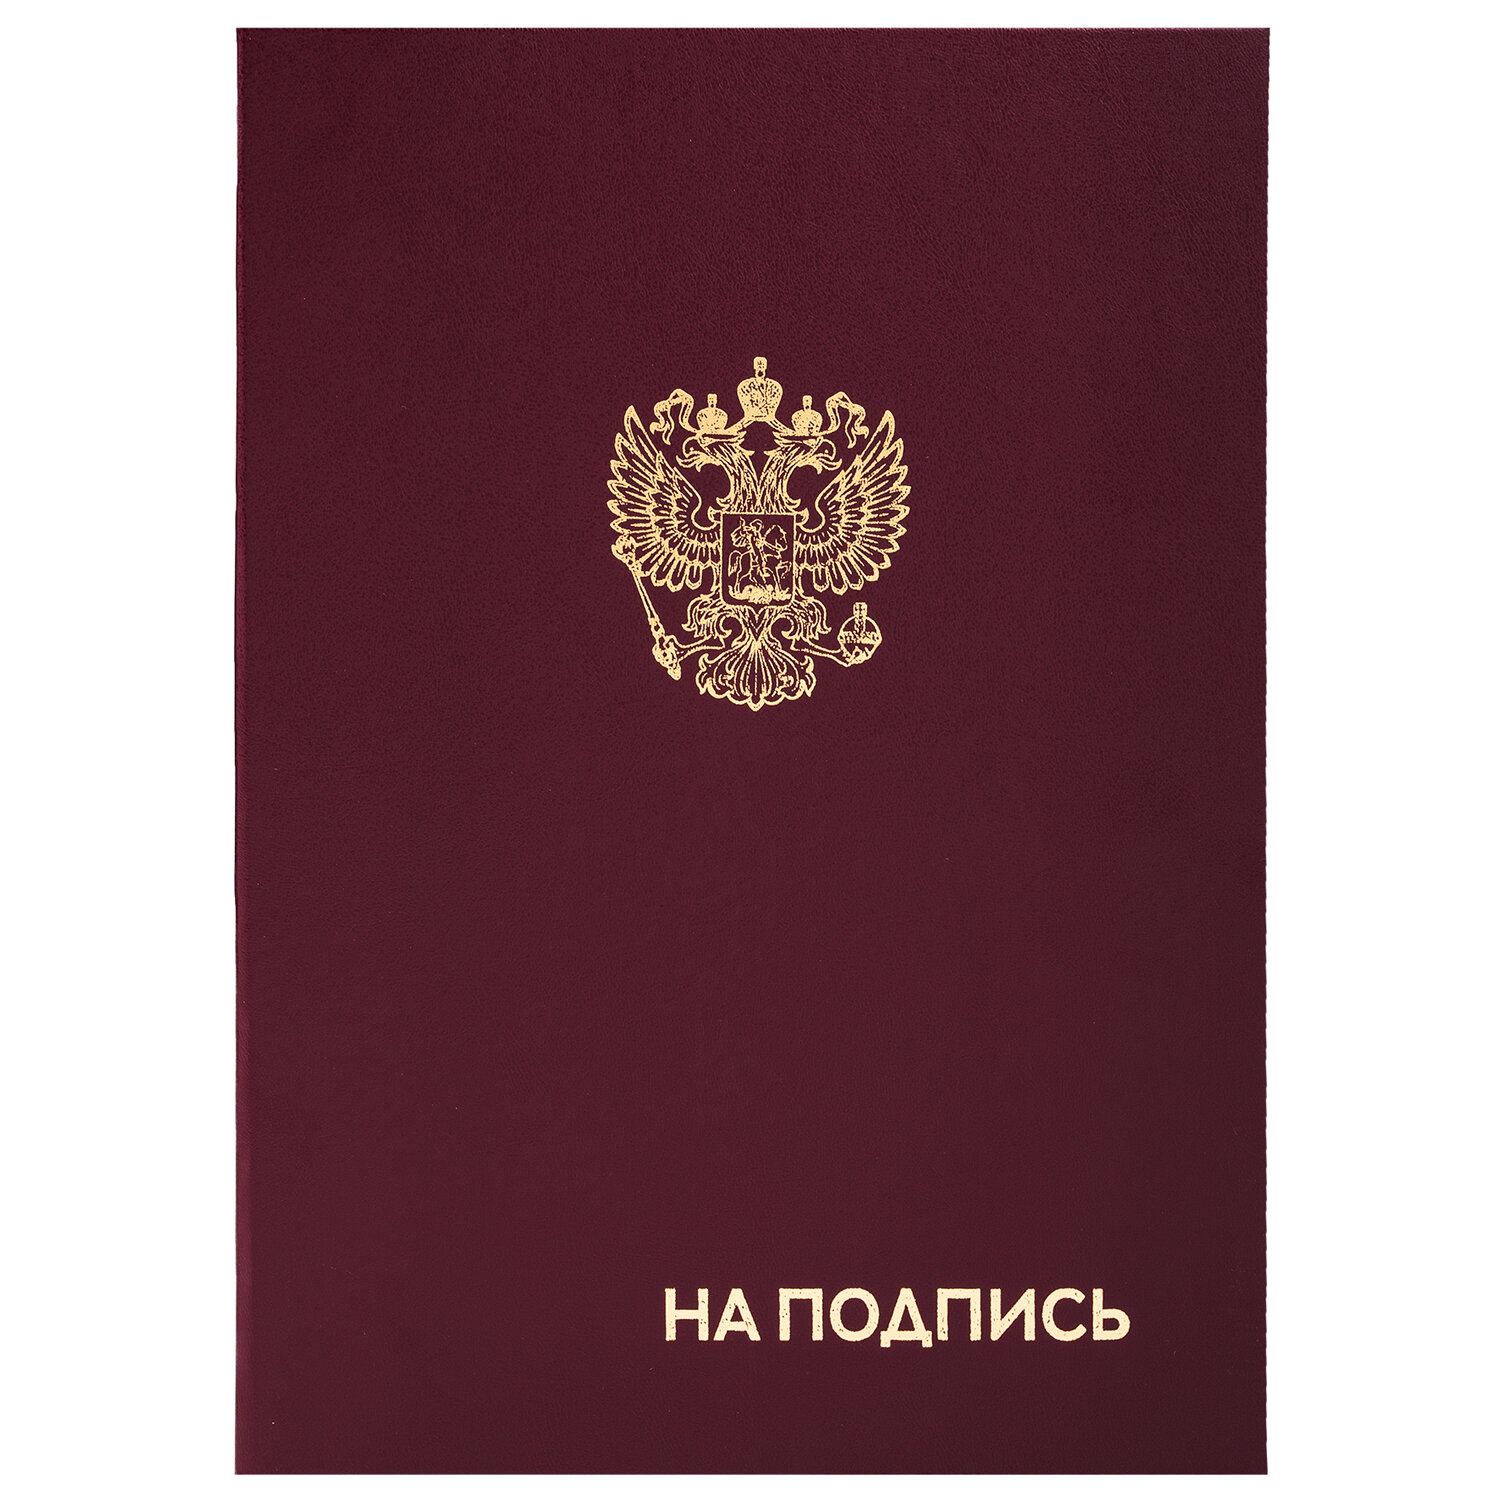 Папка адресная бумвинил "НА ПОДПИСЬ" с гербом России, А4, бордовая